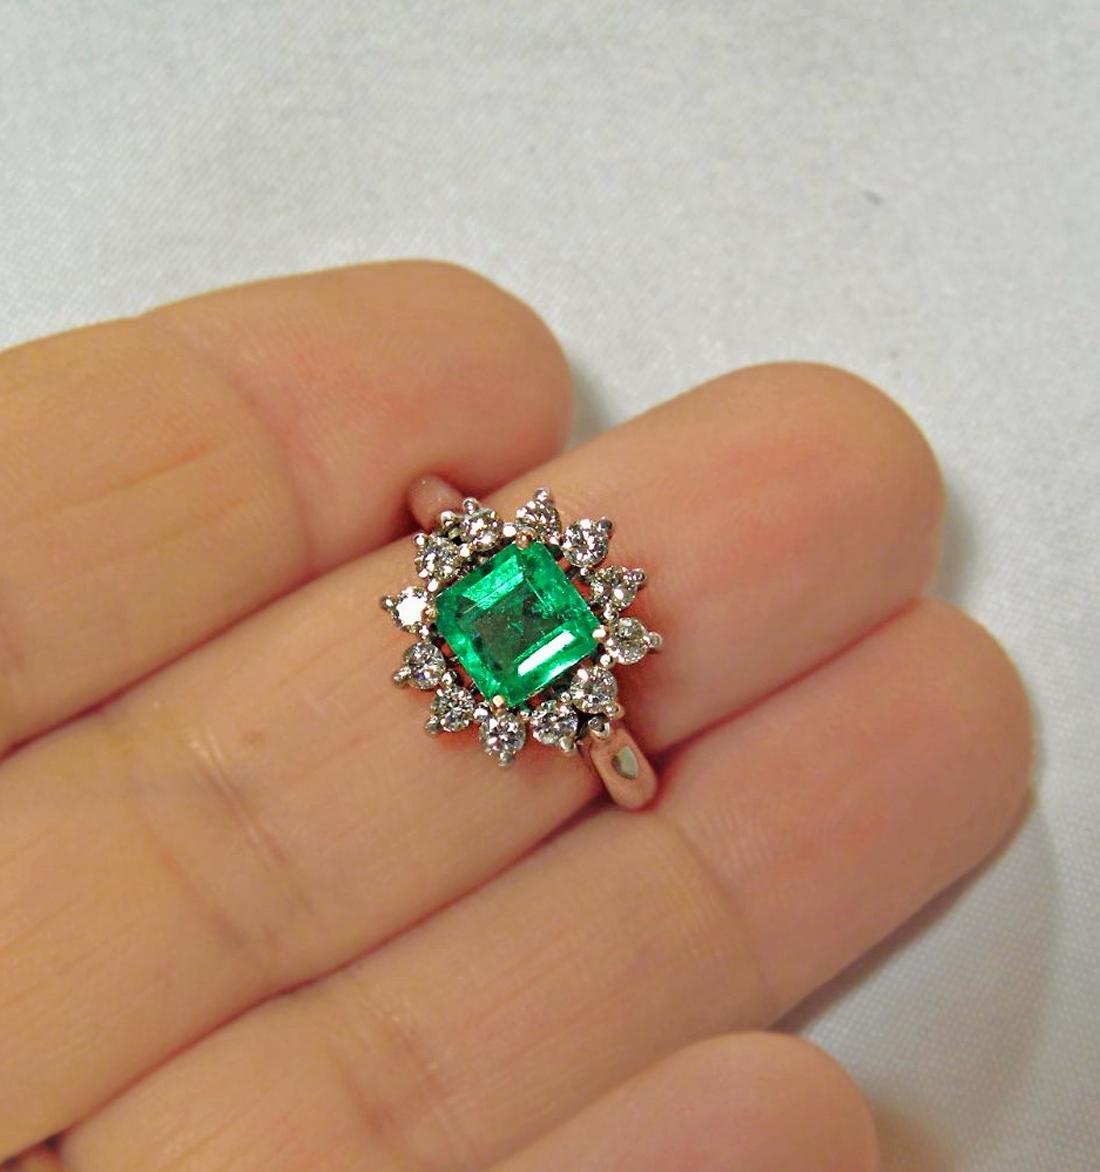 Magnifique bague de fiançailles avec une émeraude naturelle de Colombie, taille carrée, couleur vert AAA++, pureté VS. Poids total des émeraudes :1,09 carats. Accentué de diamants blancs naturels G/VS, 0,63 carats
Dimensions de l'émeraude : 6,70 x